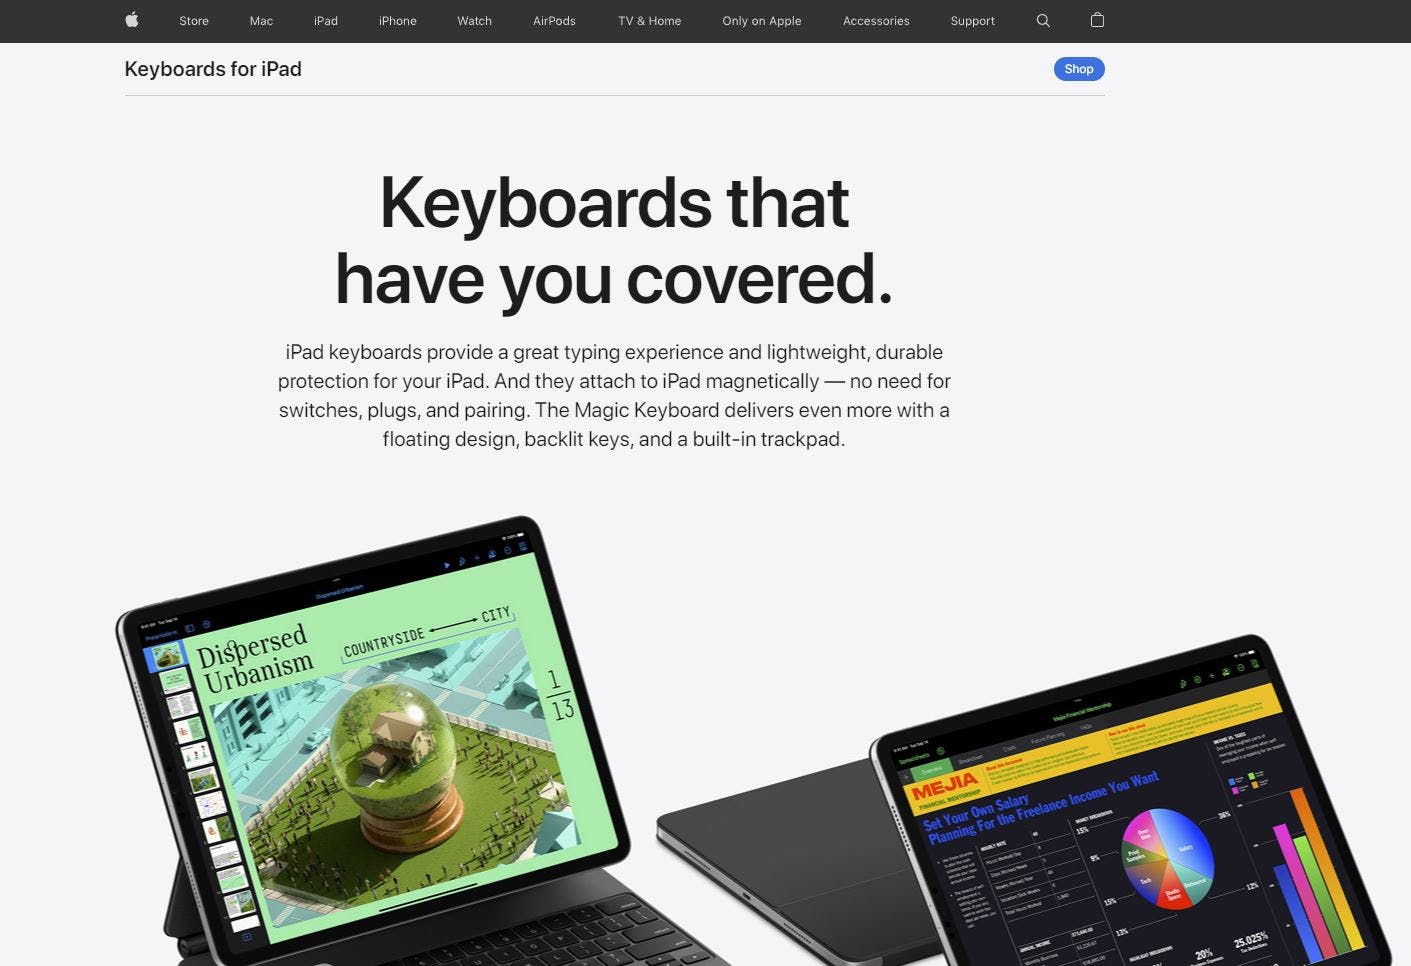 Apple Smart Keyboard media 1